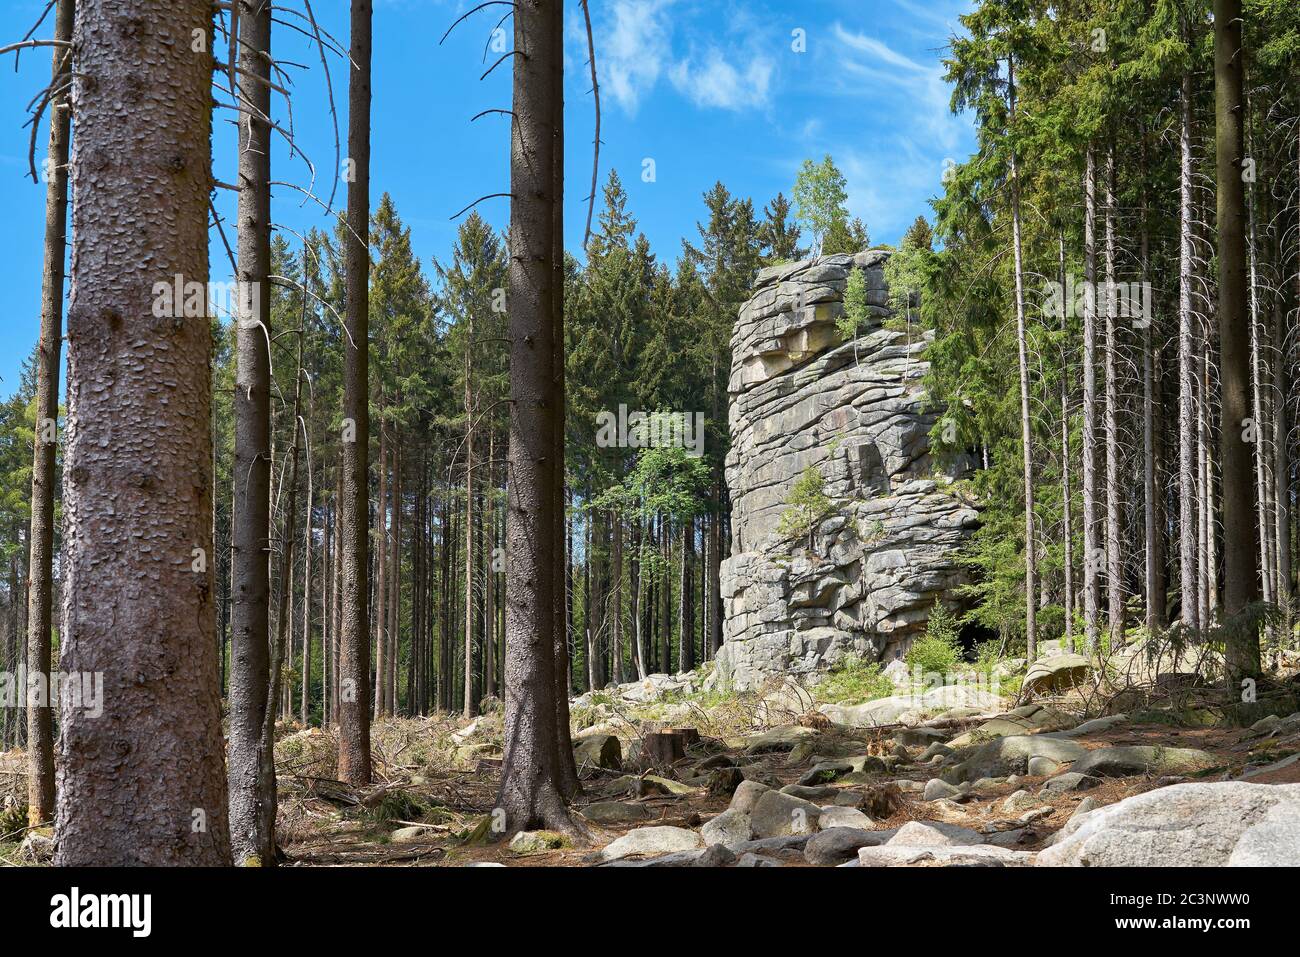 Feuersteinklippe near Schierke in the Harz National Park in Germany Stock Photo